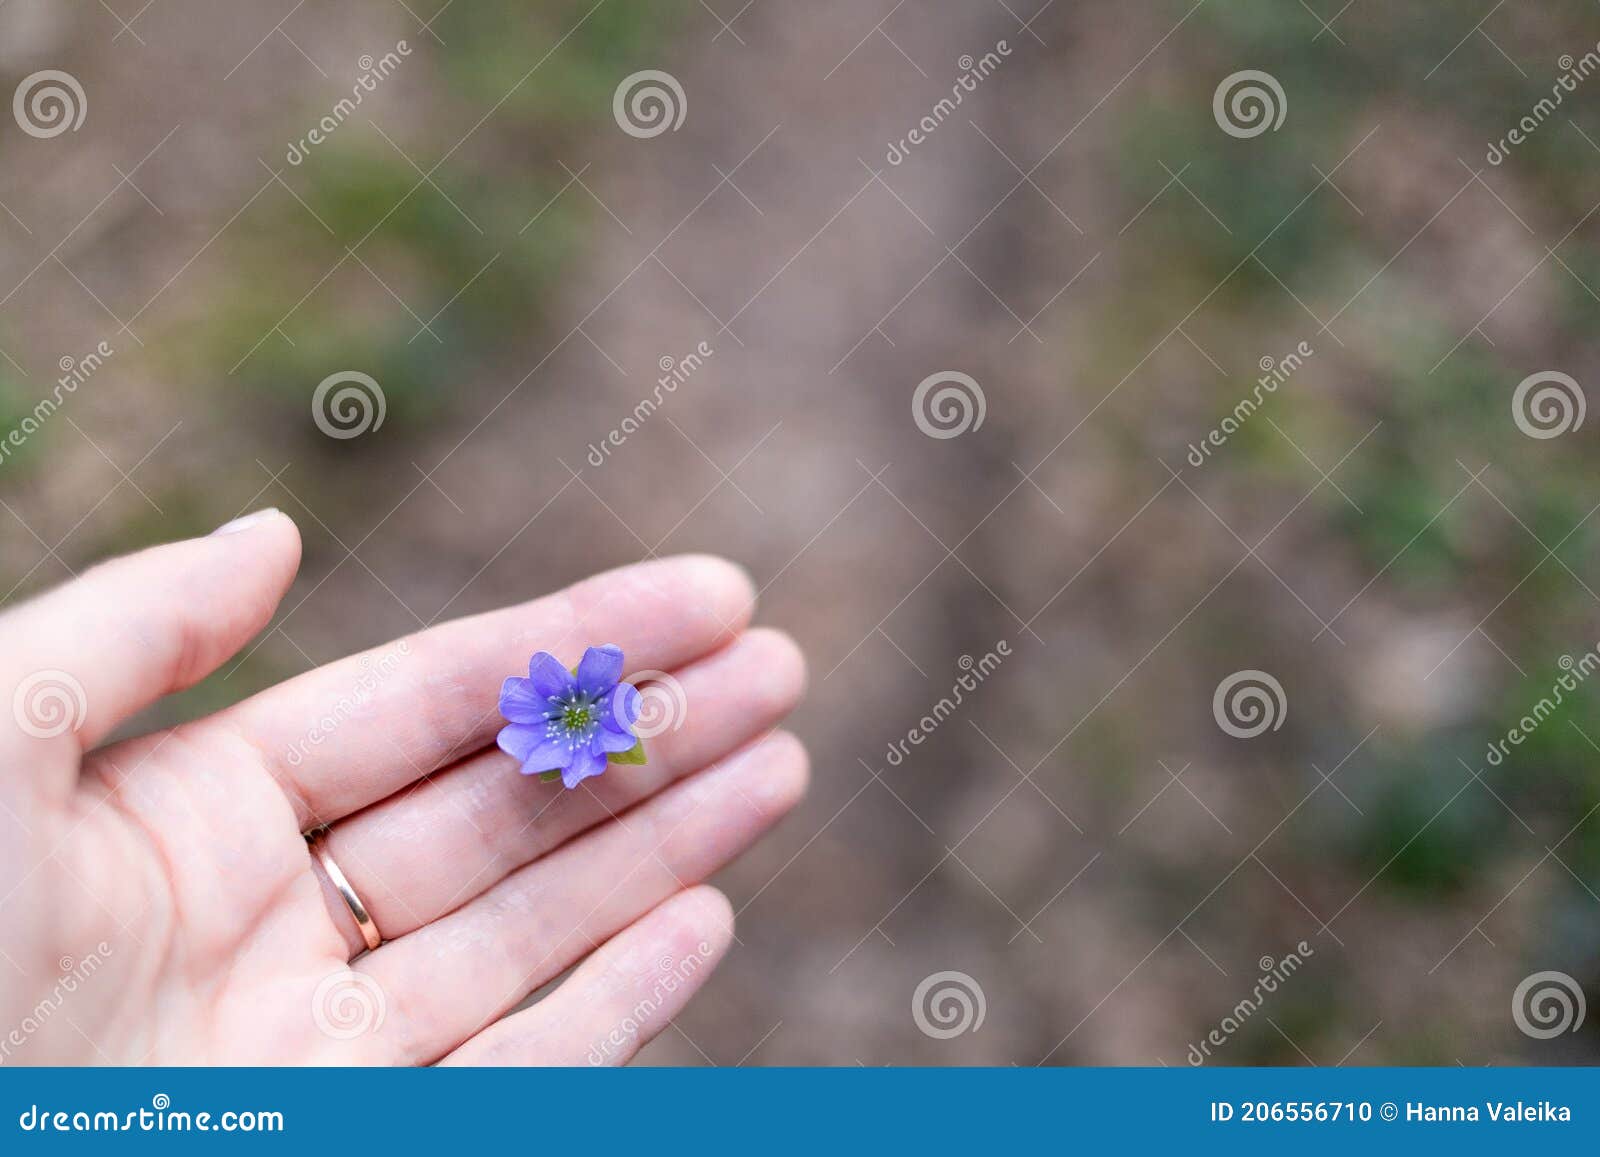 a lilac flower hepÃÂ¡tica in a woman's hand